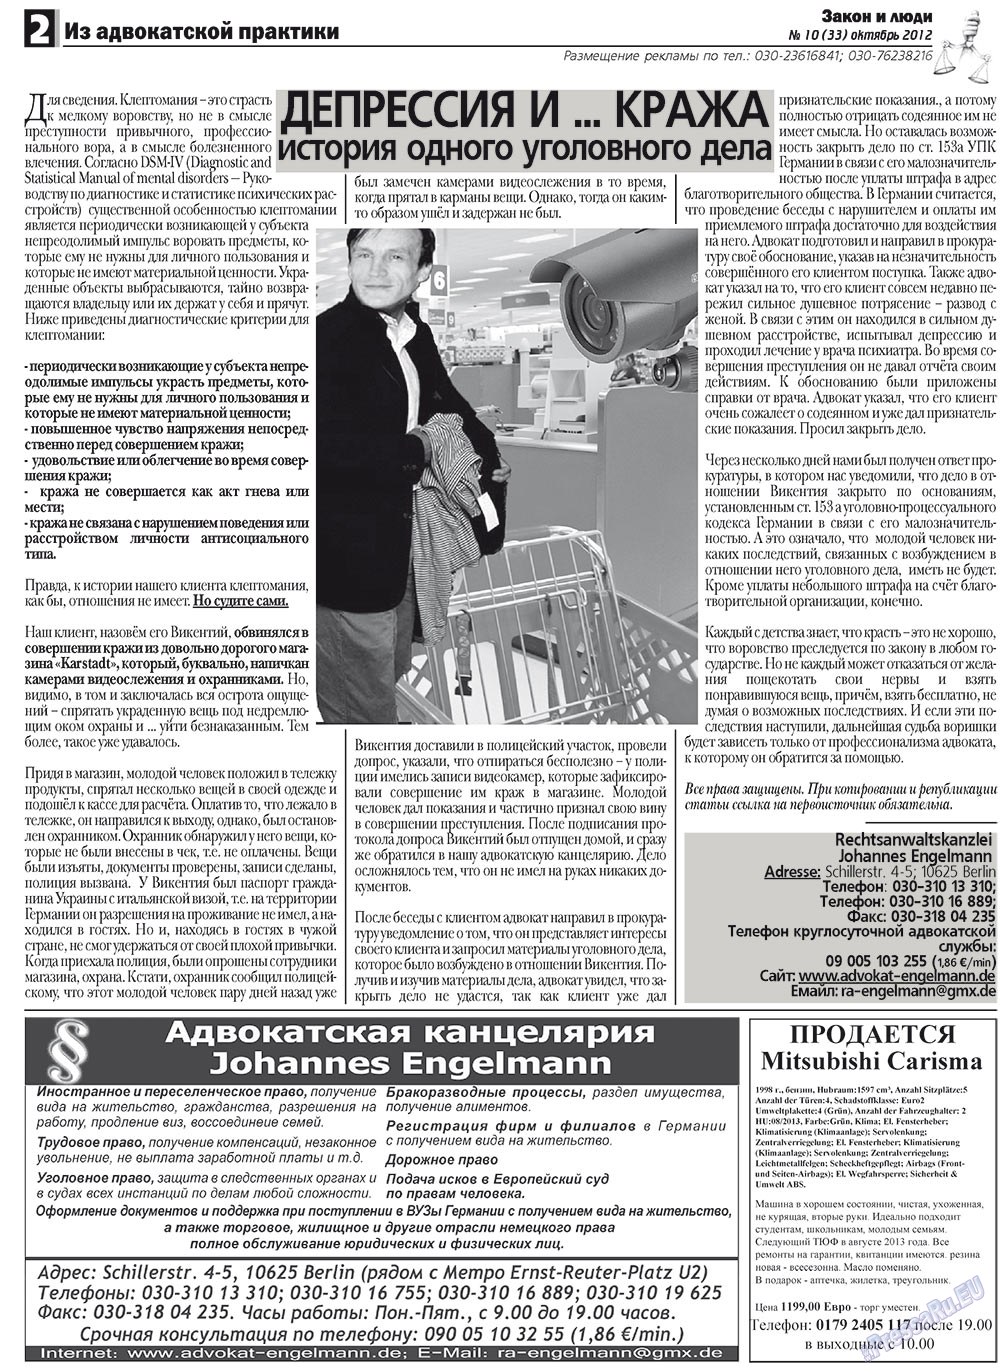 Закон и люди, газета. 2012 №10 стр.2